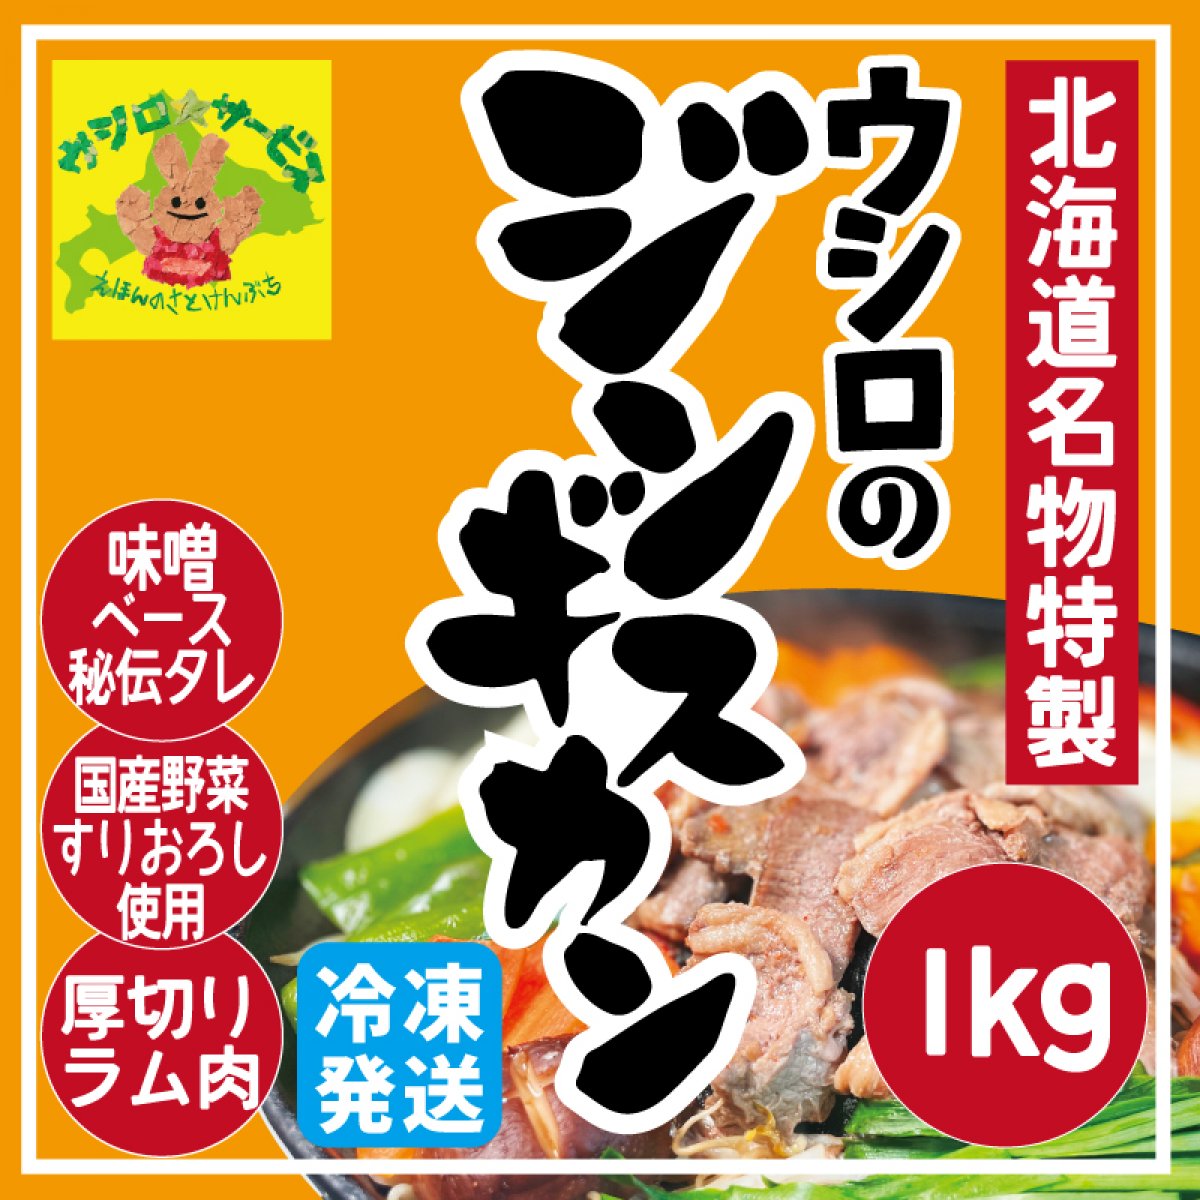 【特製】ウシロのジンギスカン 1kg (冷凍)